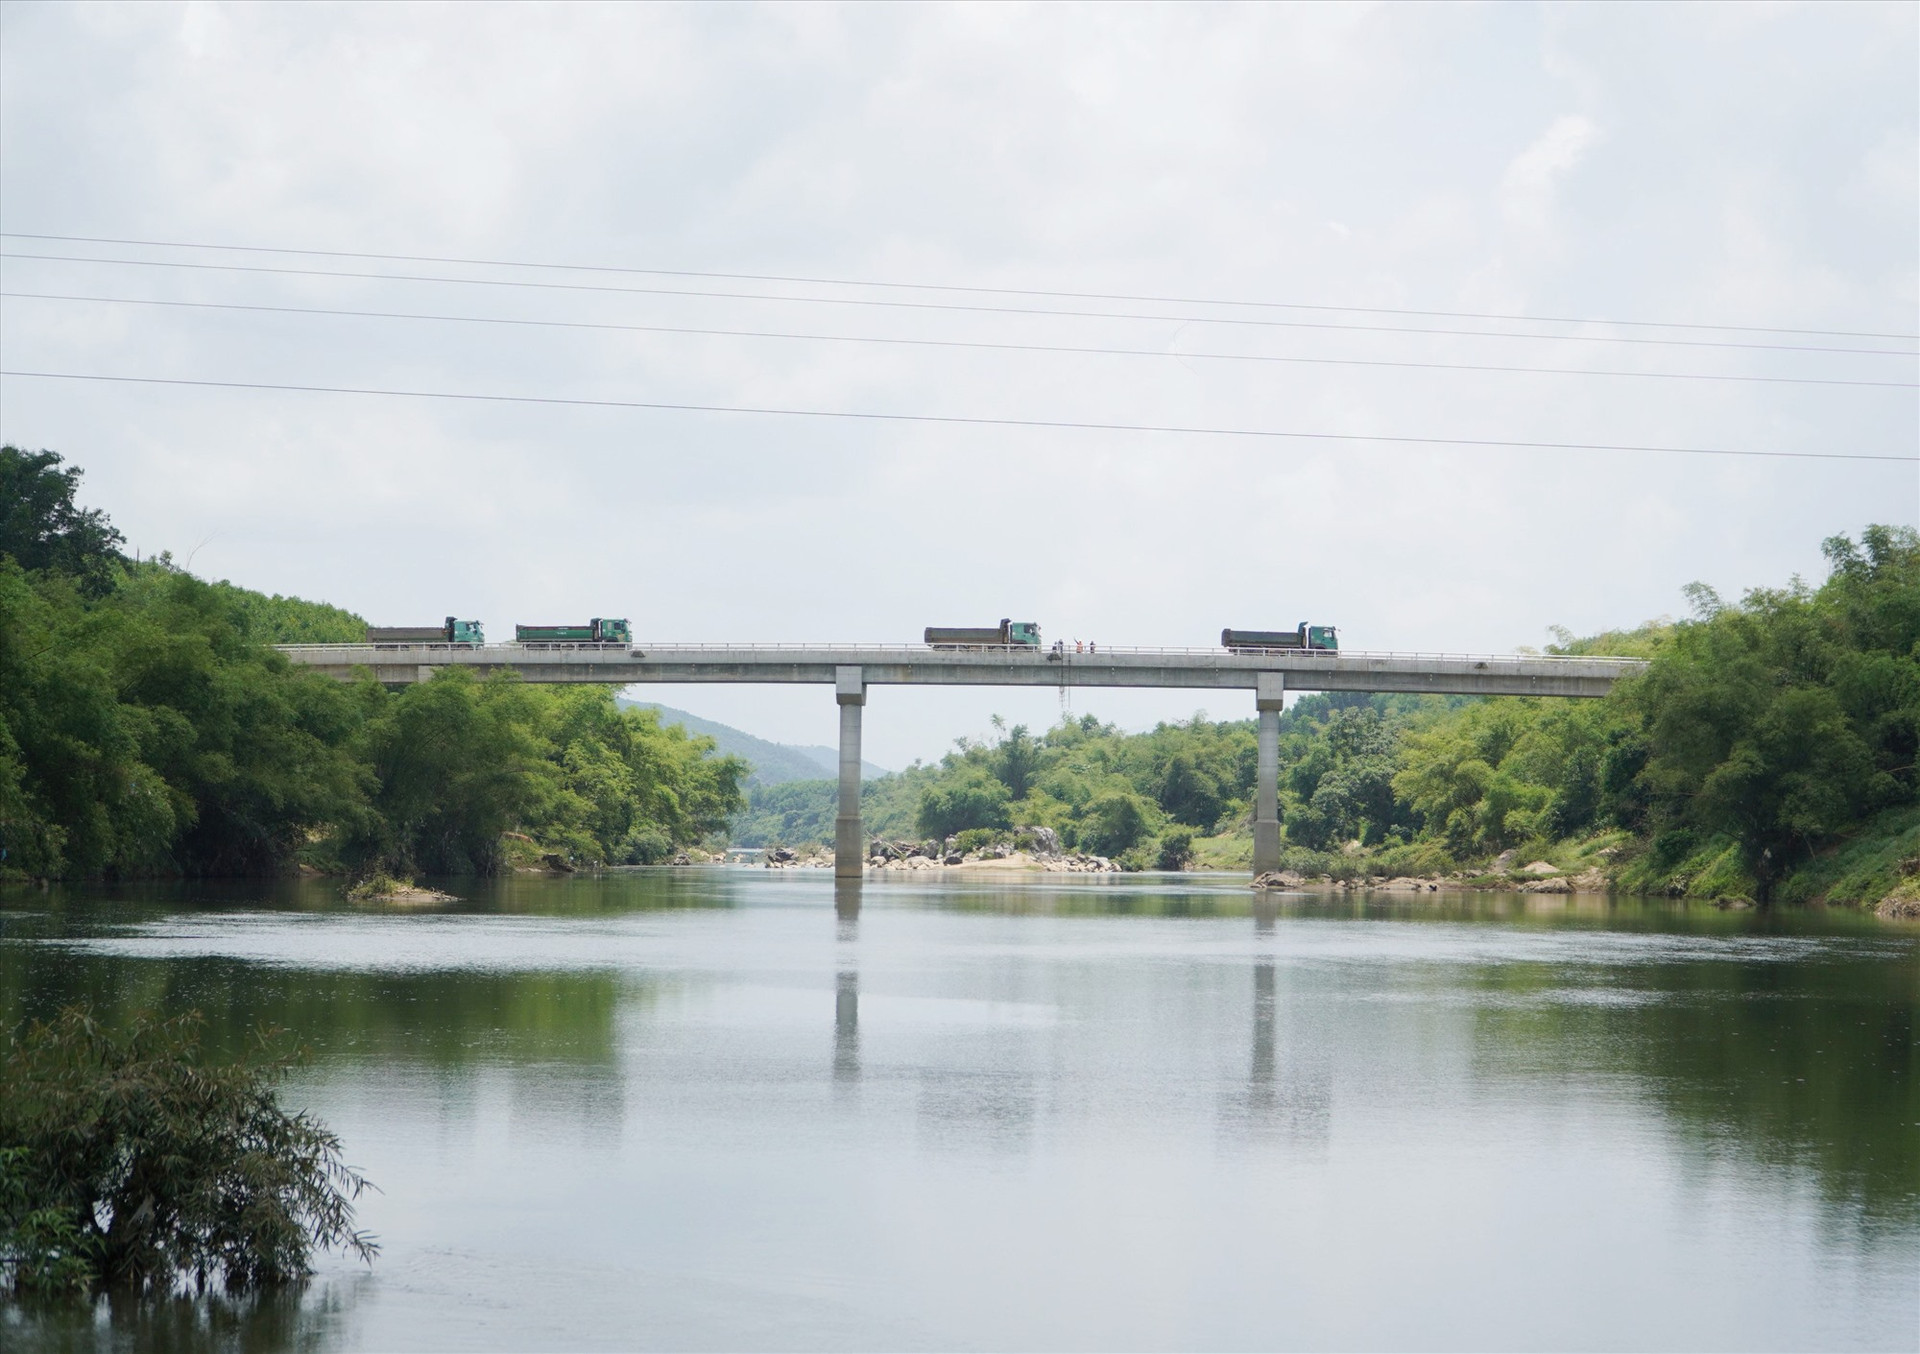 Cầu Sông Khang nhìn từ cầu chìm (ngầm) Sông Khang. Thời điểm chụp, đơn vị chức năng đã thực hiện bước kiểm tra tải trọng cầu. Ảnh: A.Q